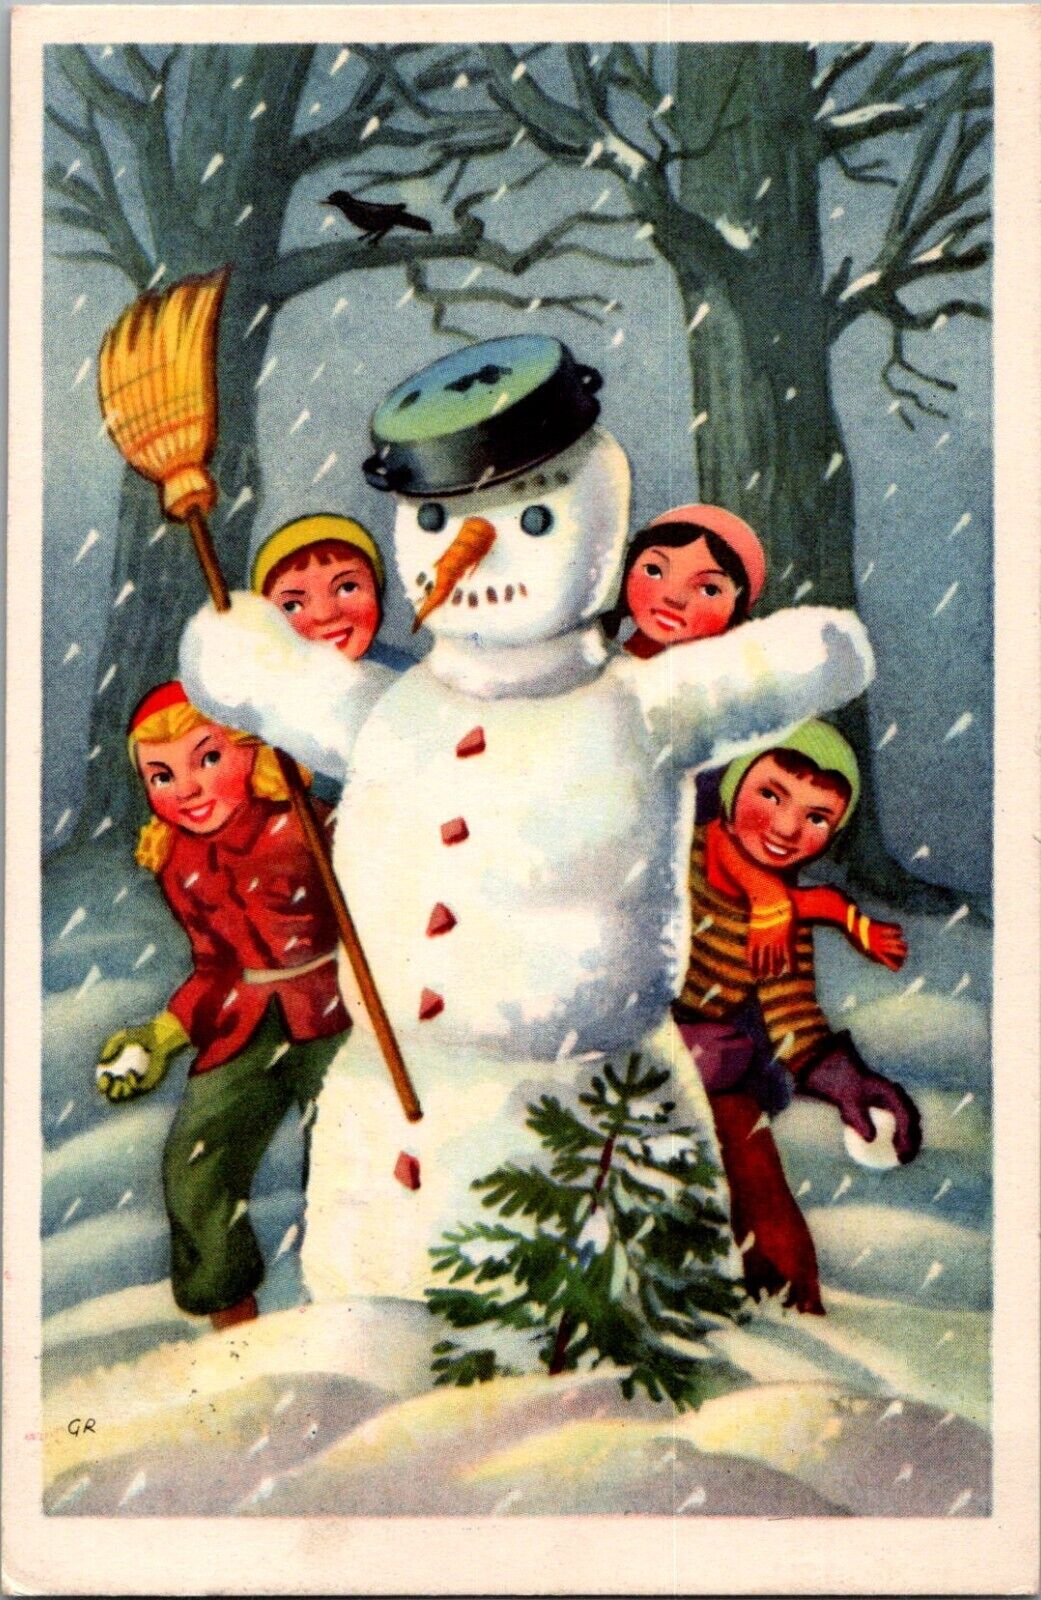 1959 European New Year Postcard Children Hide Behind Snowman In Woods